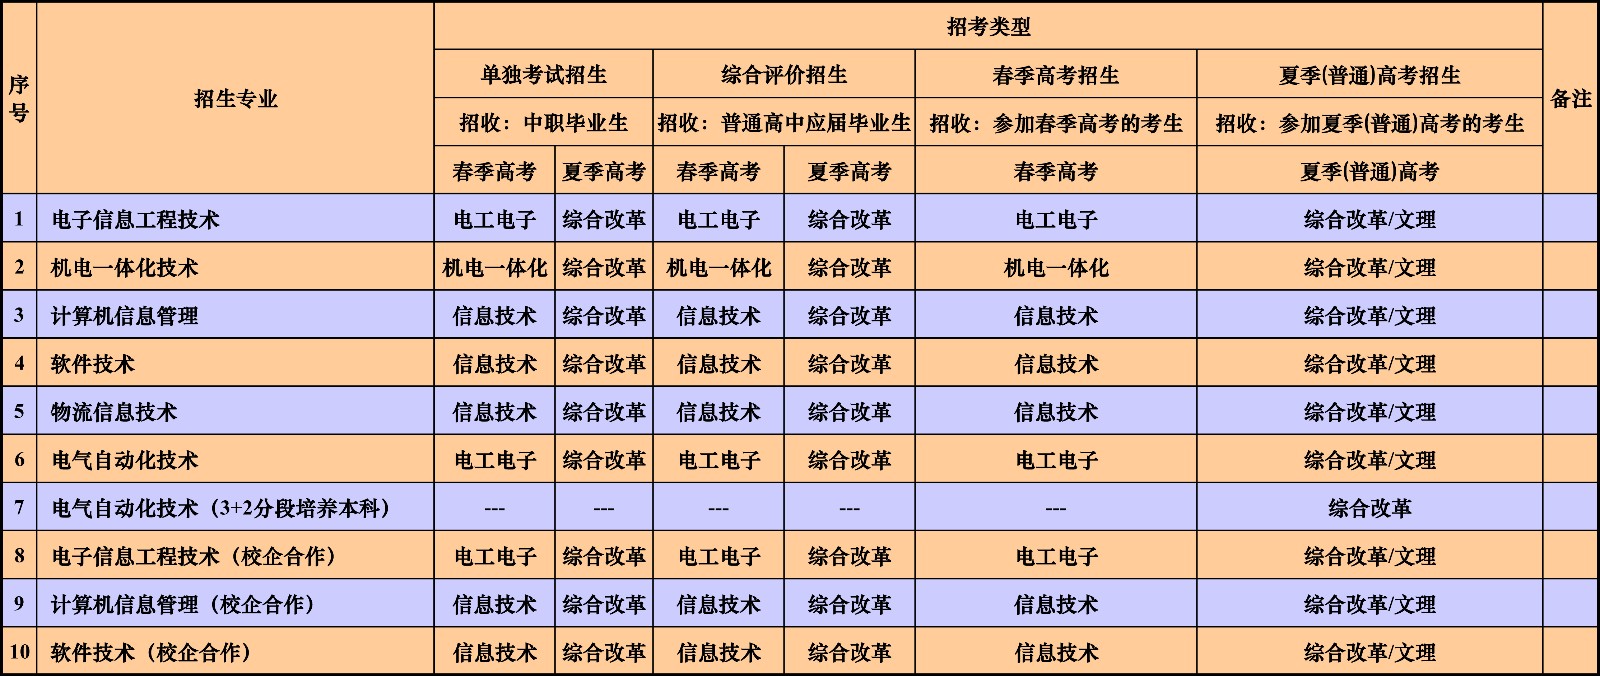 青岛港湾职业技术学院2020年招生专业及类型一览表-信息与电气工程学院.jpg